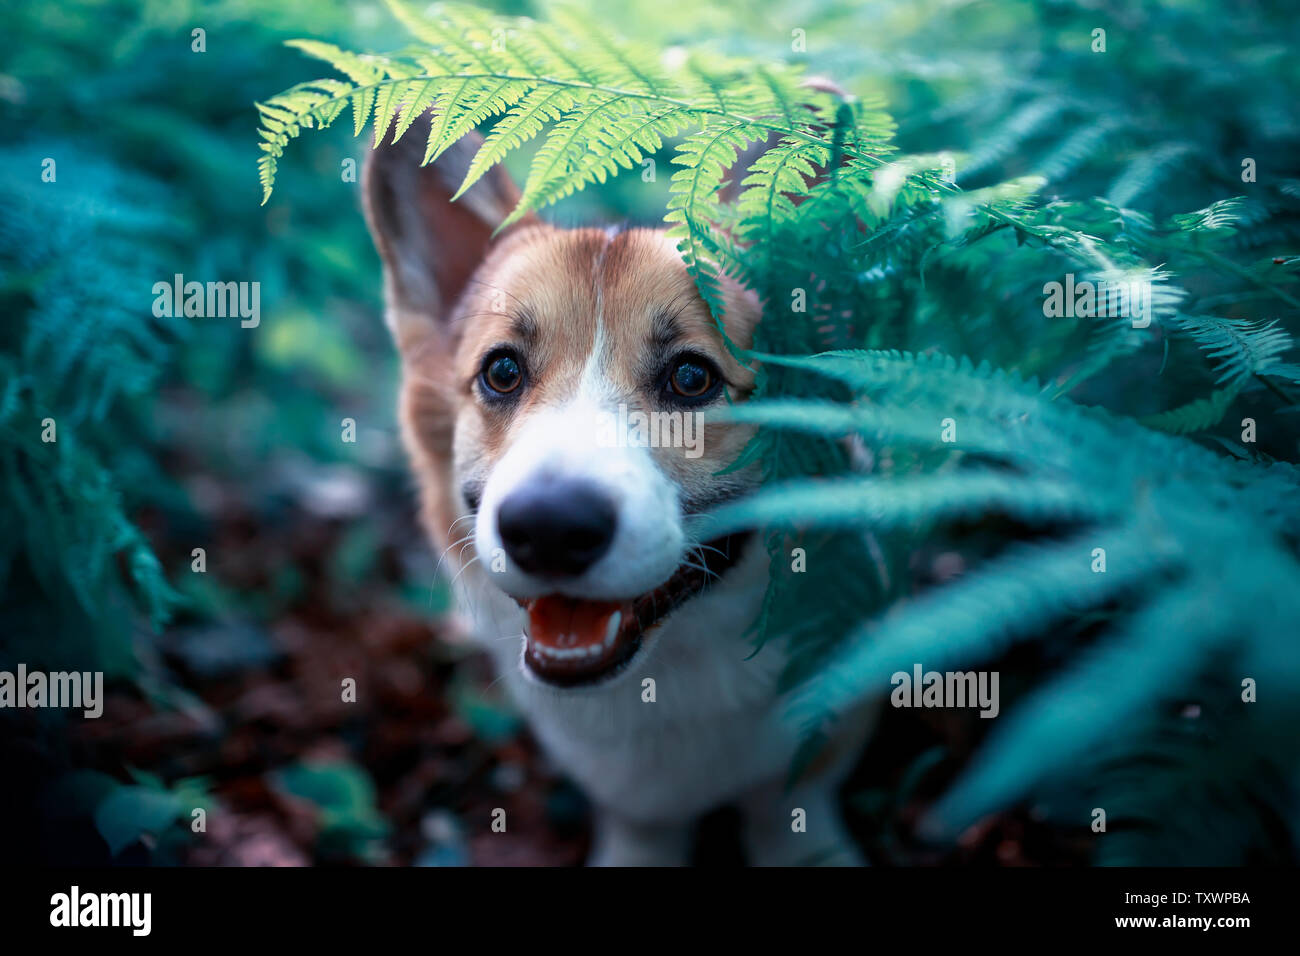 Funny red corgi cucciolo di cane passeggiate nel parco e guarda fuori delle foglie spesse di una felce Foto Stock